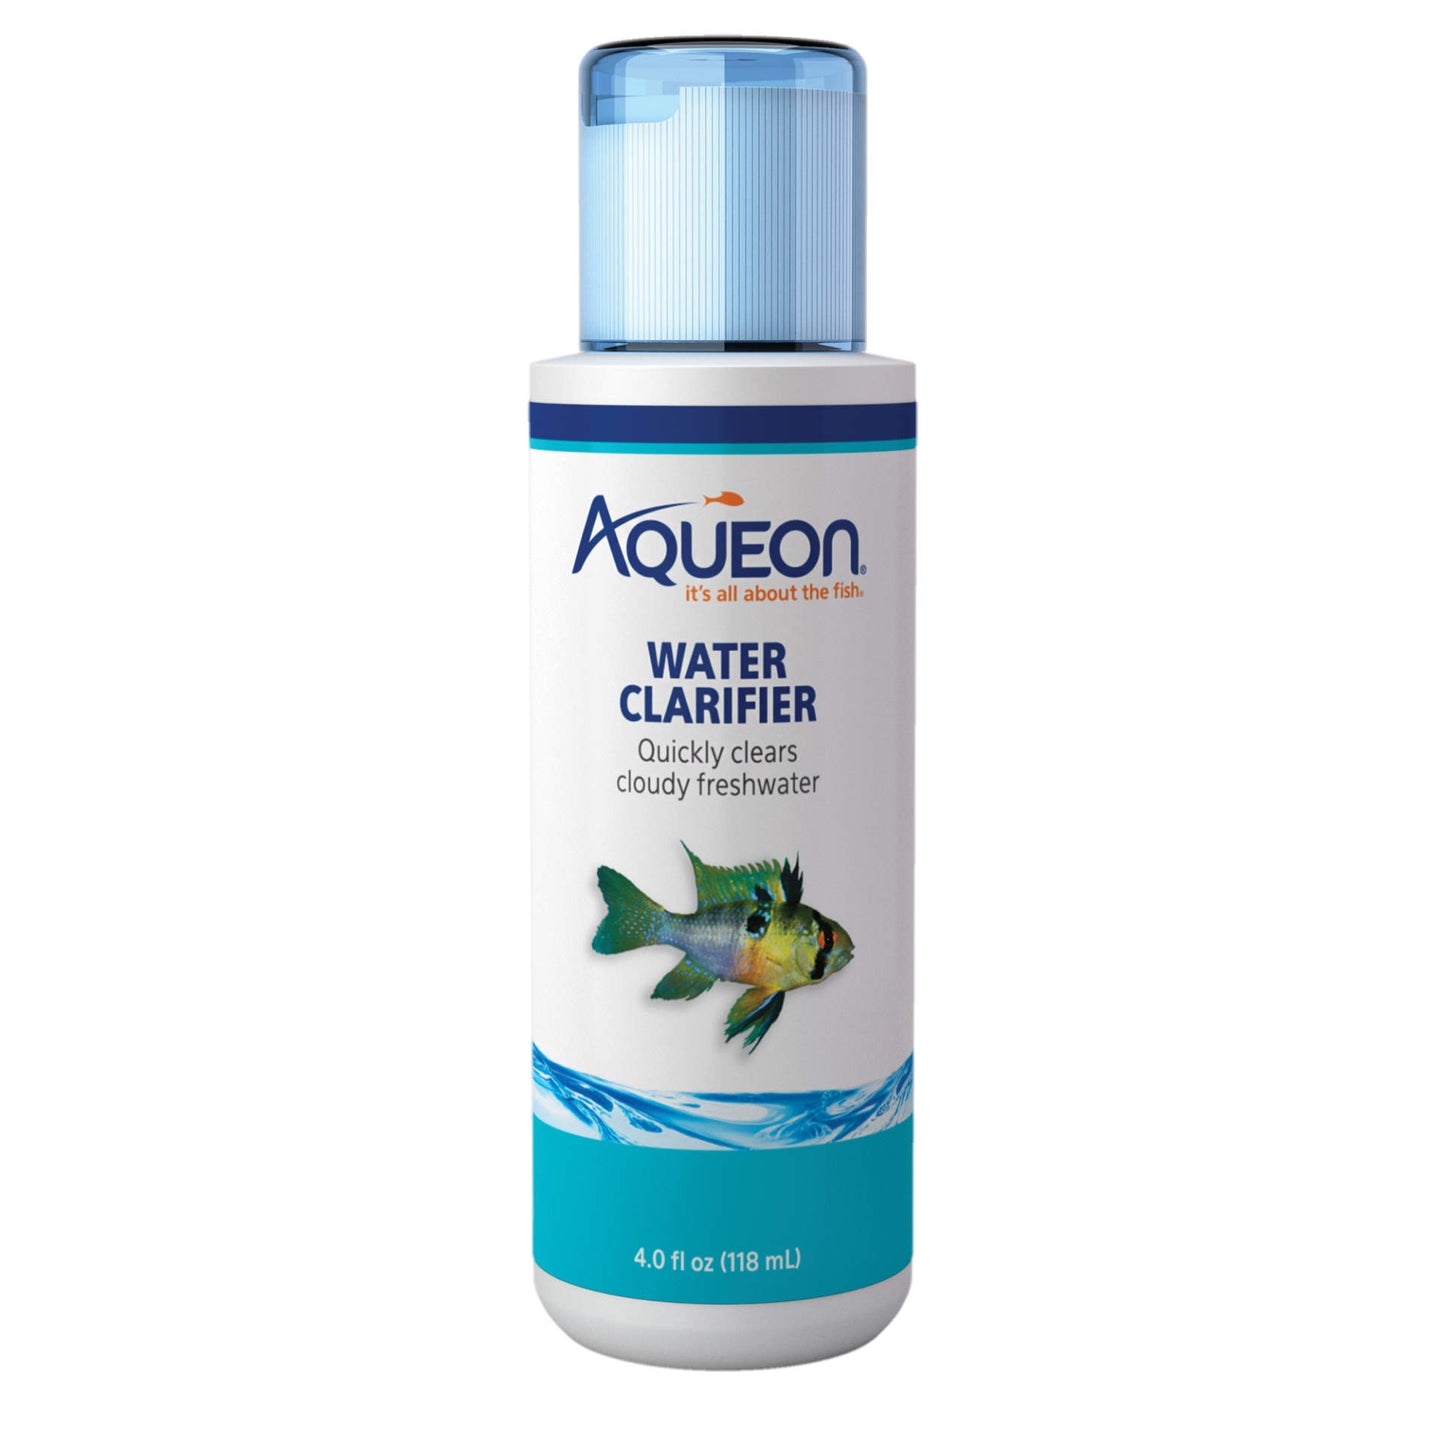 Aqueon Water Clarifier